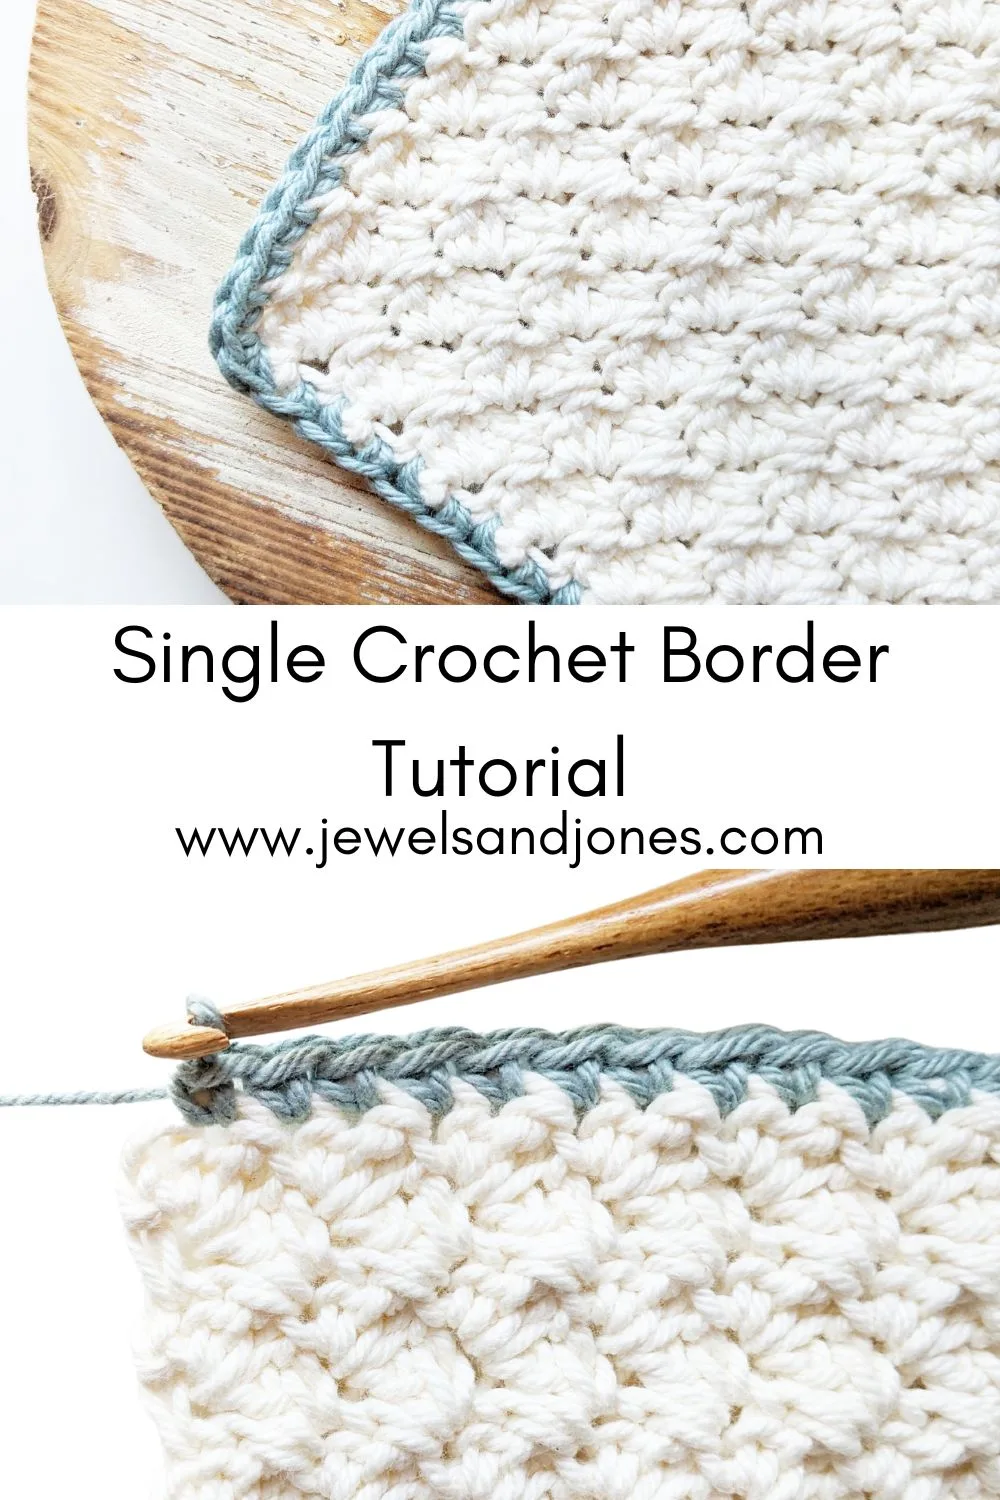 Single Crochet Border Tutorial